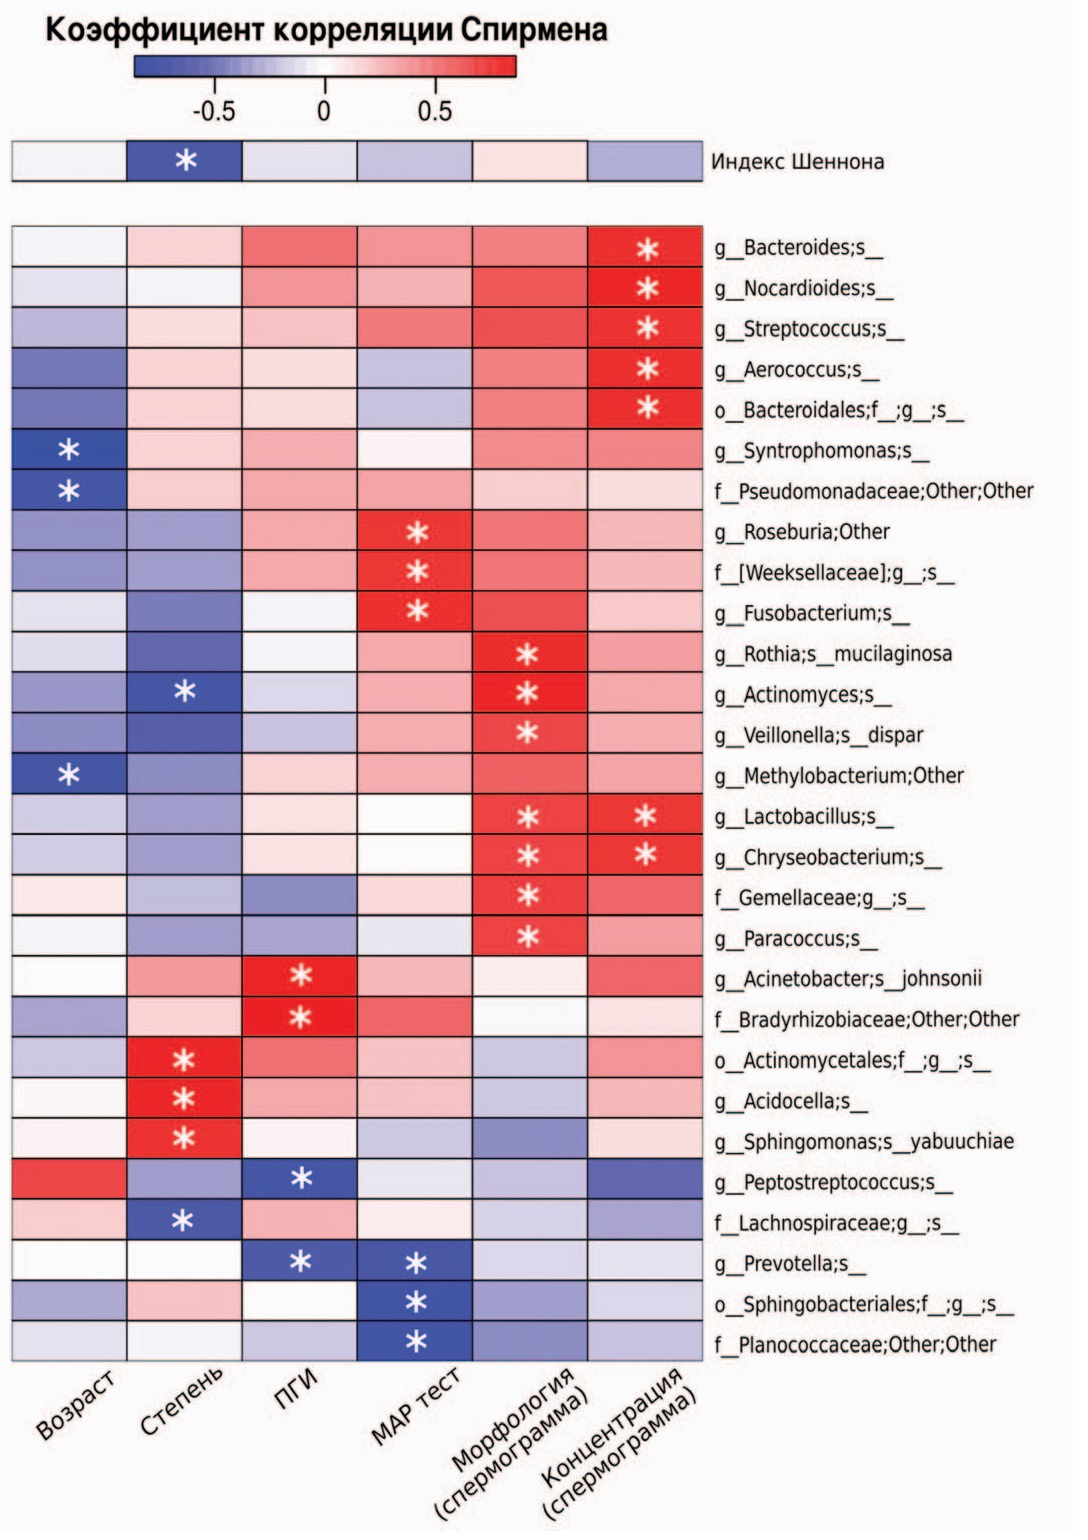 Тепловая карта коэффициентов корреляции Спирмена на основе анализа микробиоты яичка